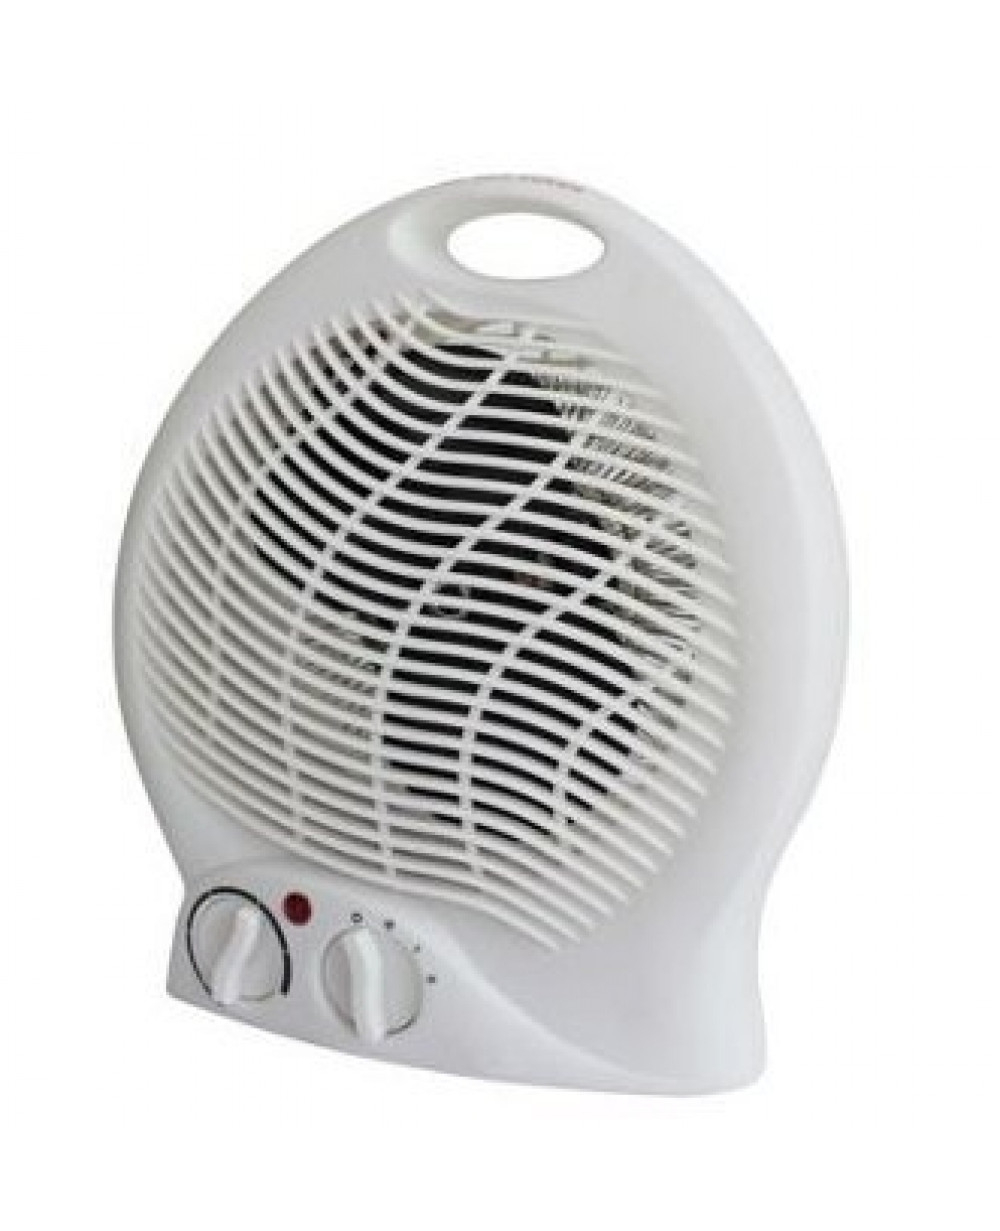 Argos Simple Value 2kw Flat Fan Heater in size 1000 X 1231